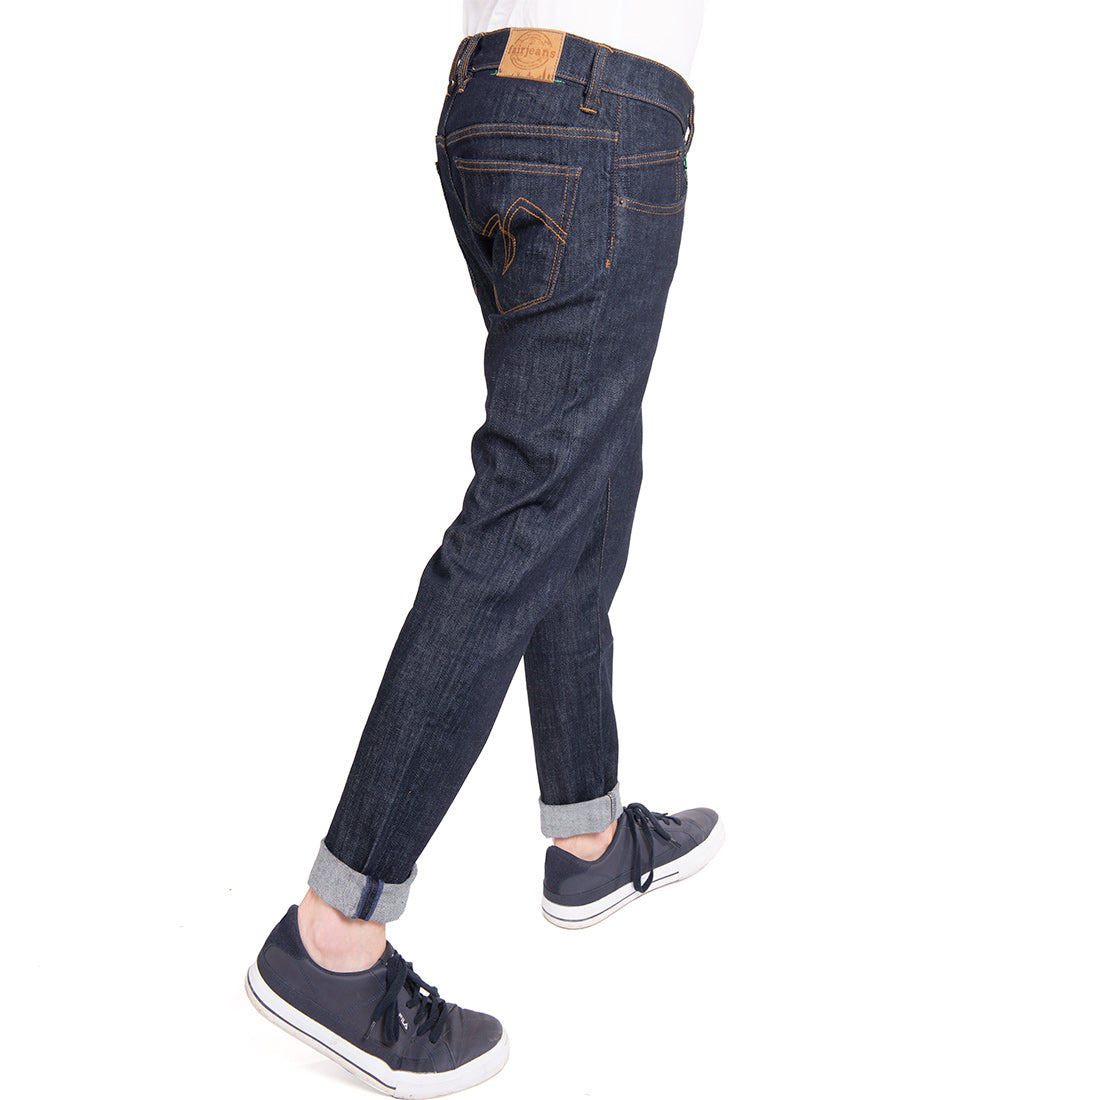 Fairjeans Bio-Jeans: Lässige Tapered Fit Herrenjeans aus Bio-Baumwolle, bequem und nachhaltig produziert